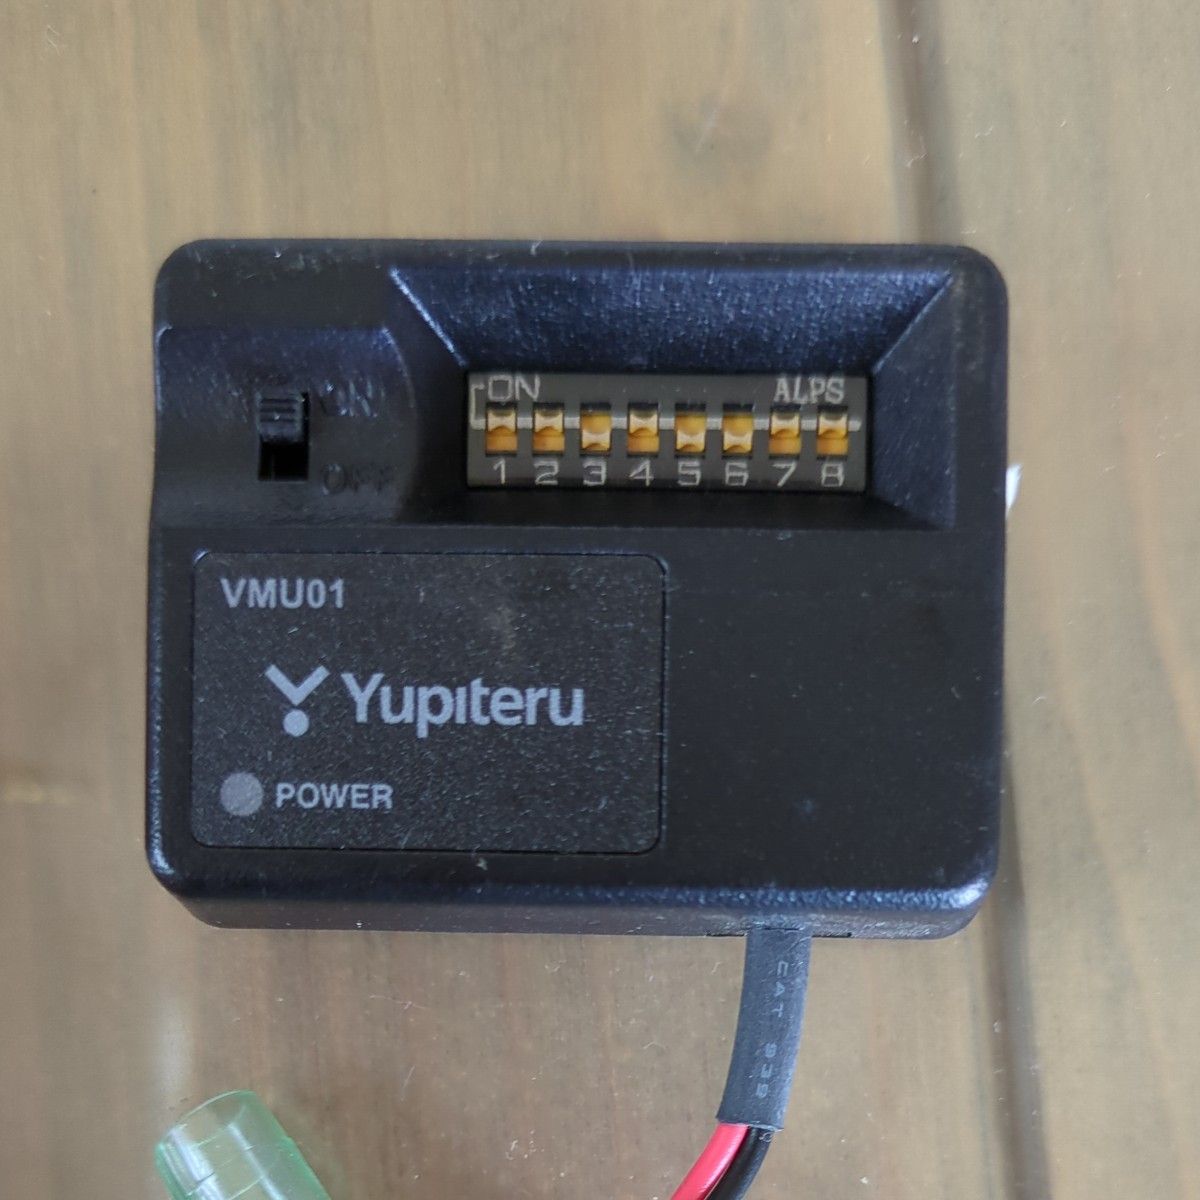 Yupiteru ユピテル 電圧監視機能付 電源ユニットOP-VMU01 VMU01 ドライブレコーダー専用 駐車記録用オプション